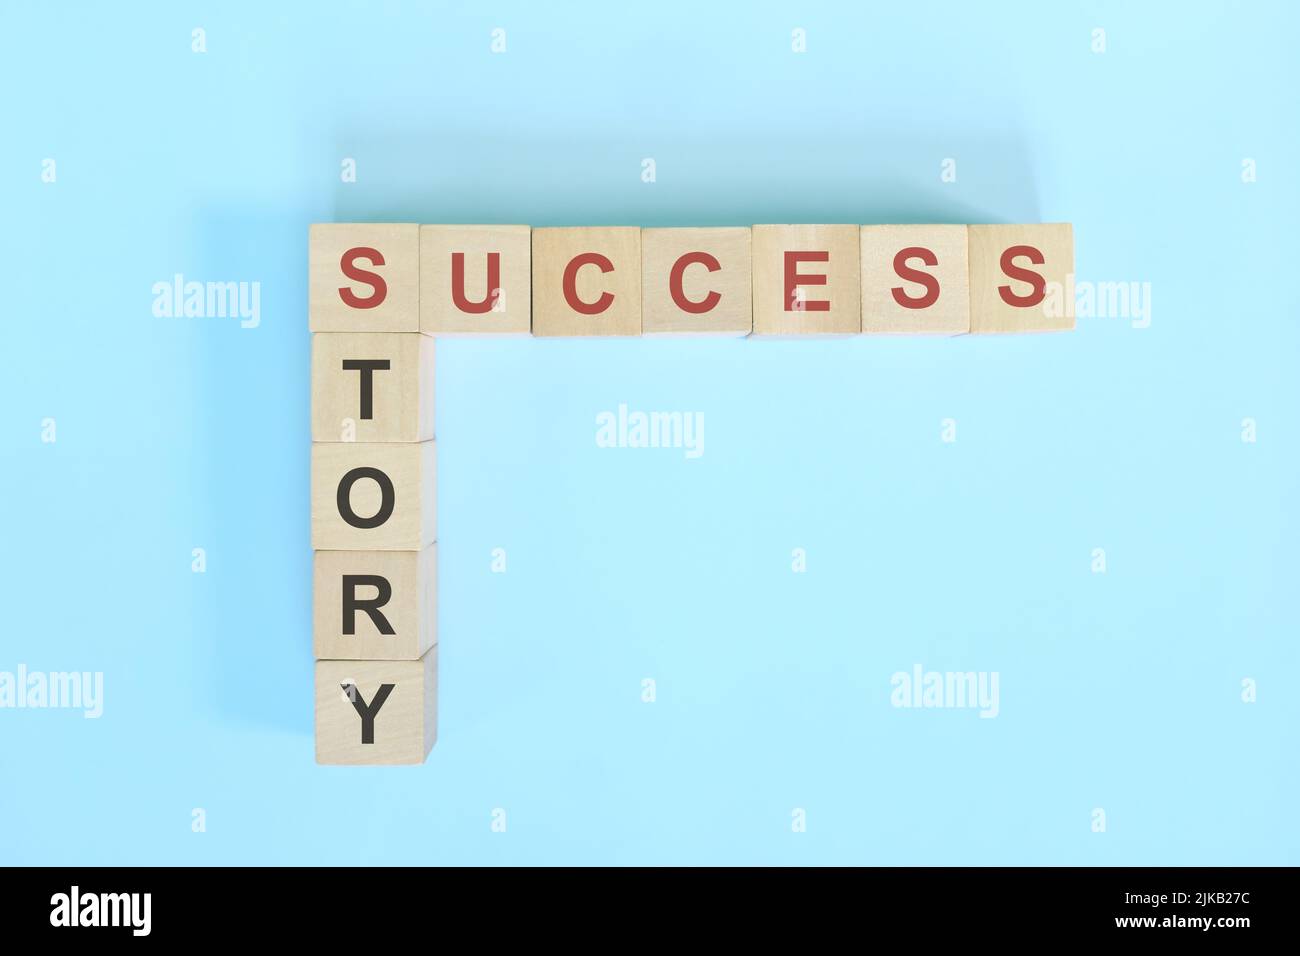 Erfolgsgeschichte im Lebens-, Geschäfts- und Karrierekonzept. Holzblock Kreuzworträtsel flach lag auf blauem Hintergrund. Stockfoto